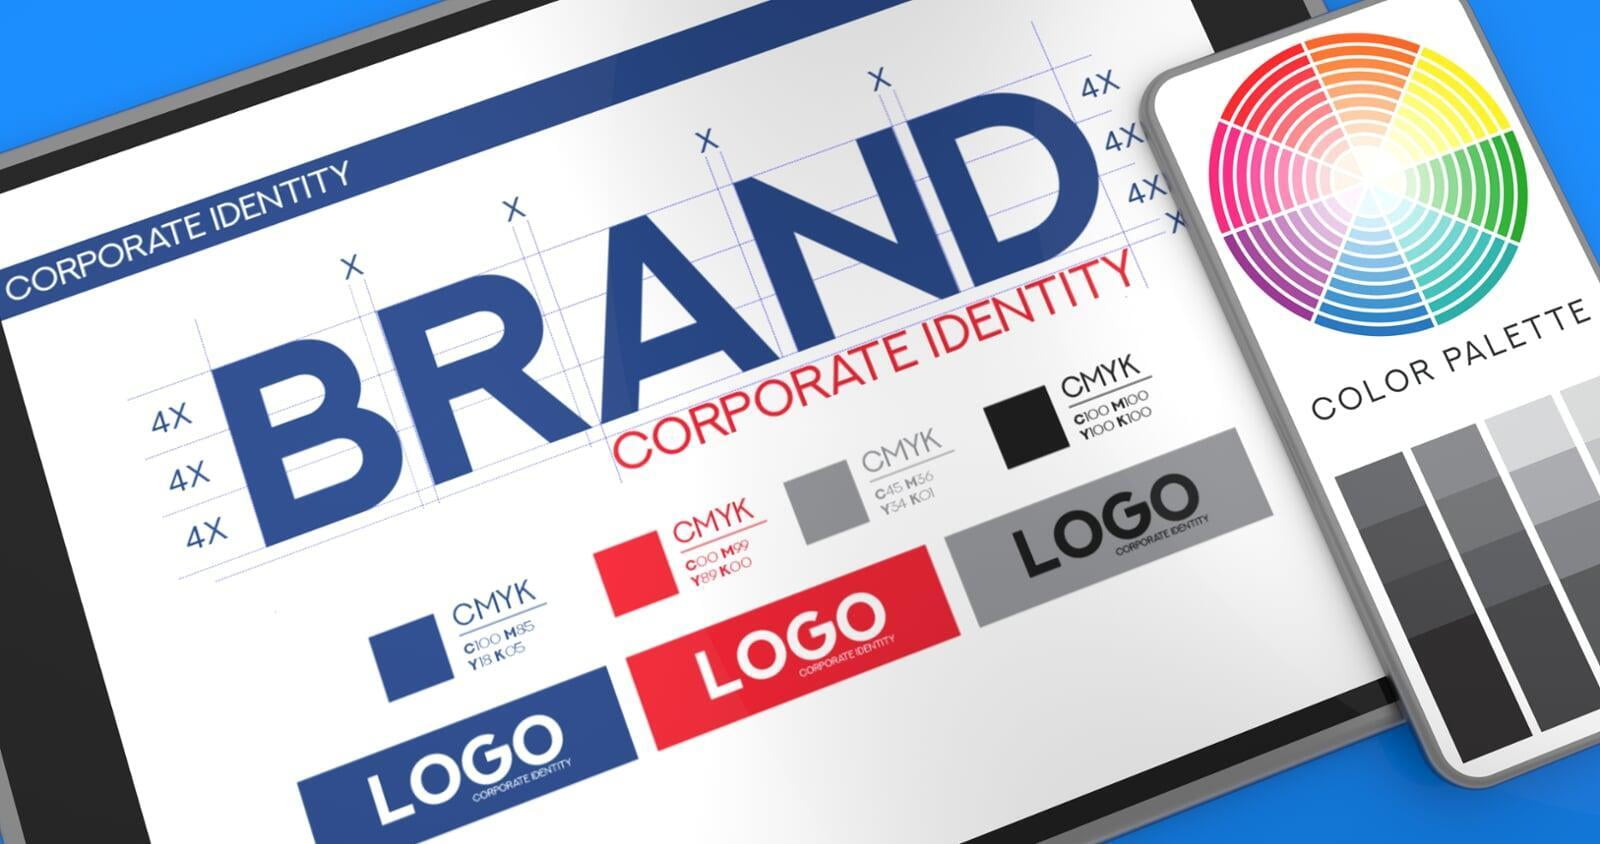 Corporate Identity als erster Schritt für das Design!